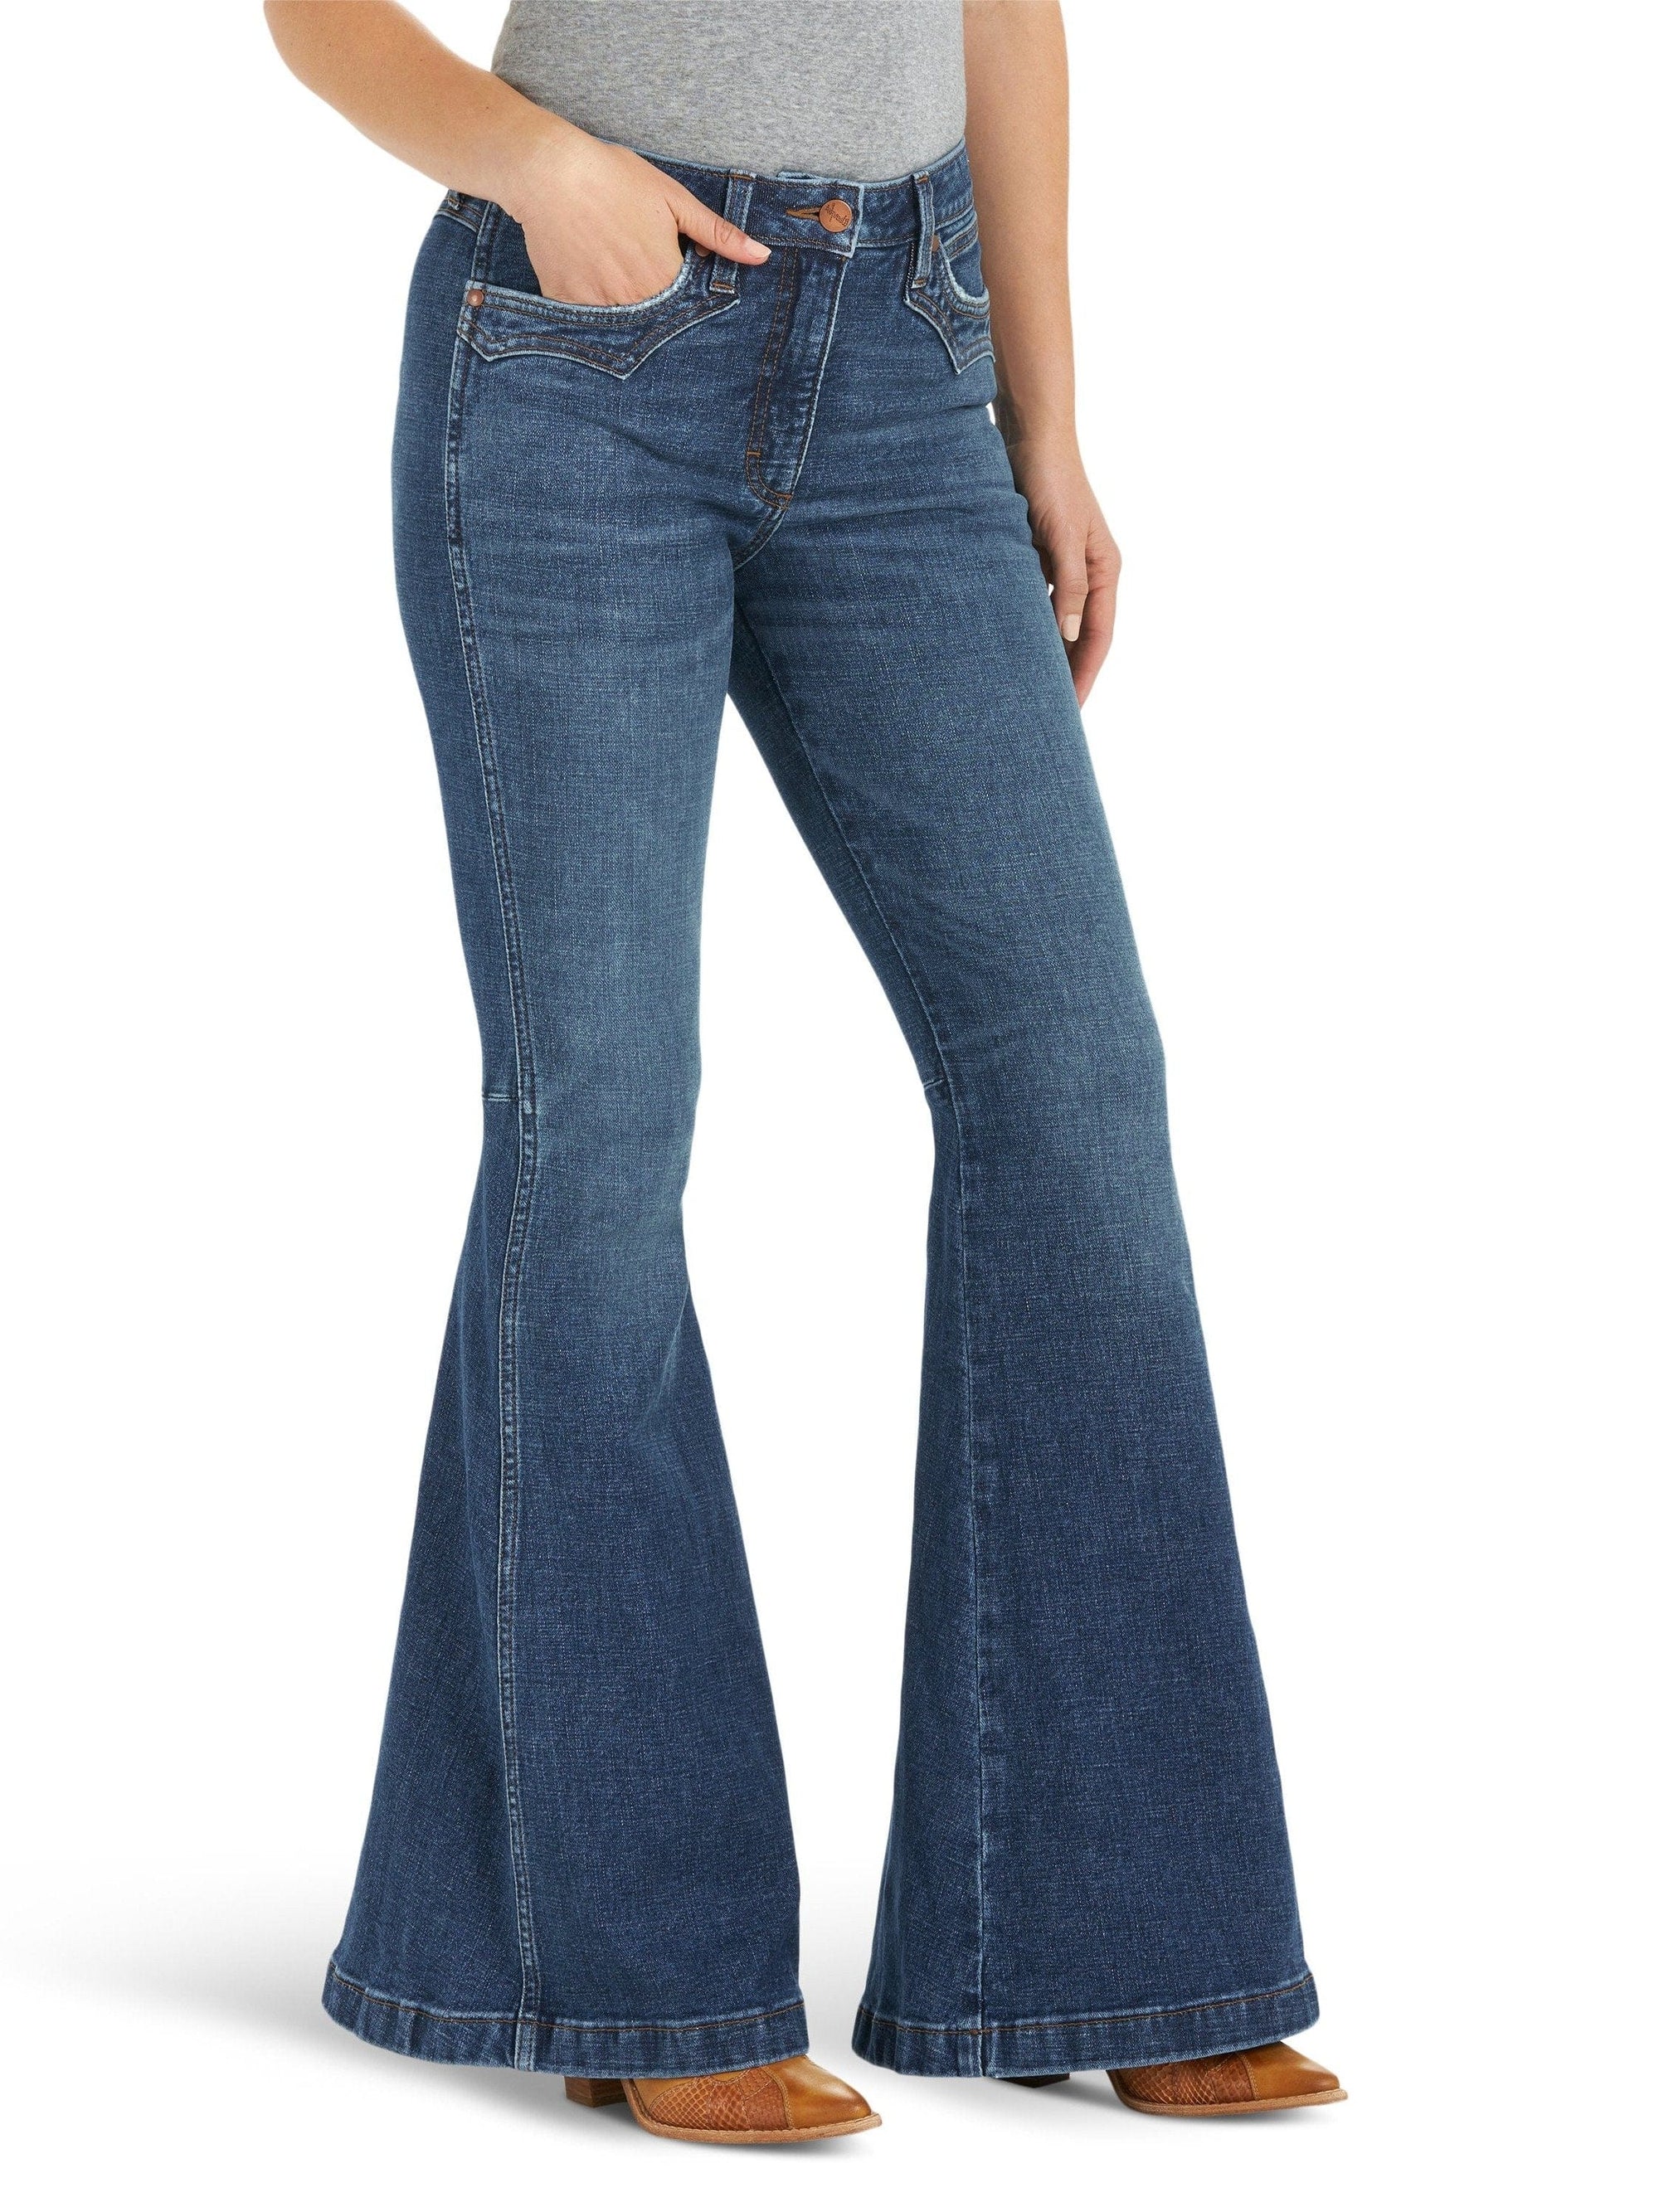 Jeans for Women - Russell's Western Wear, Inc.